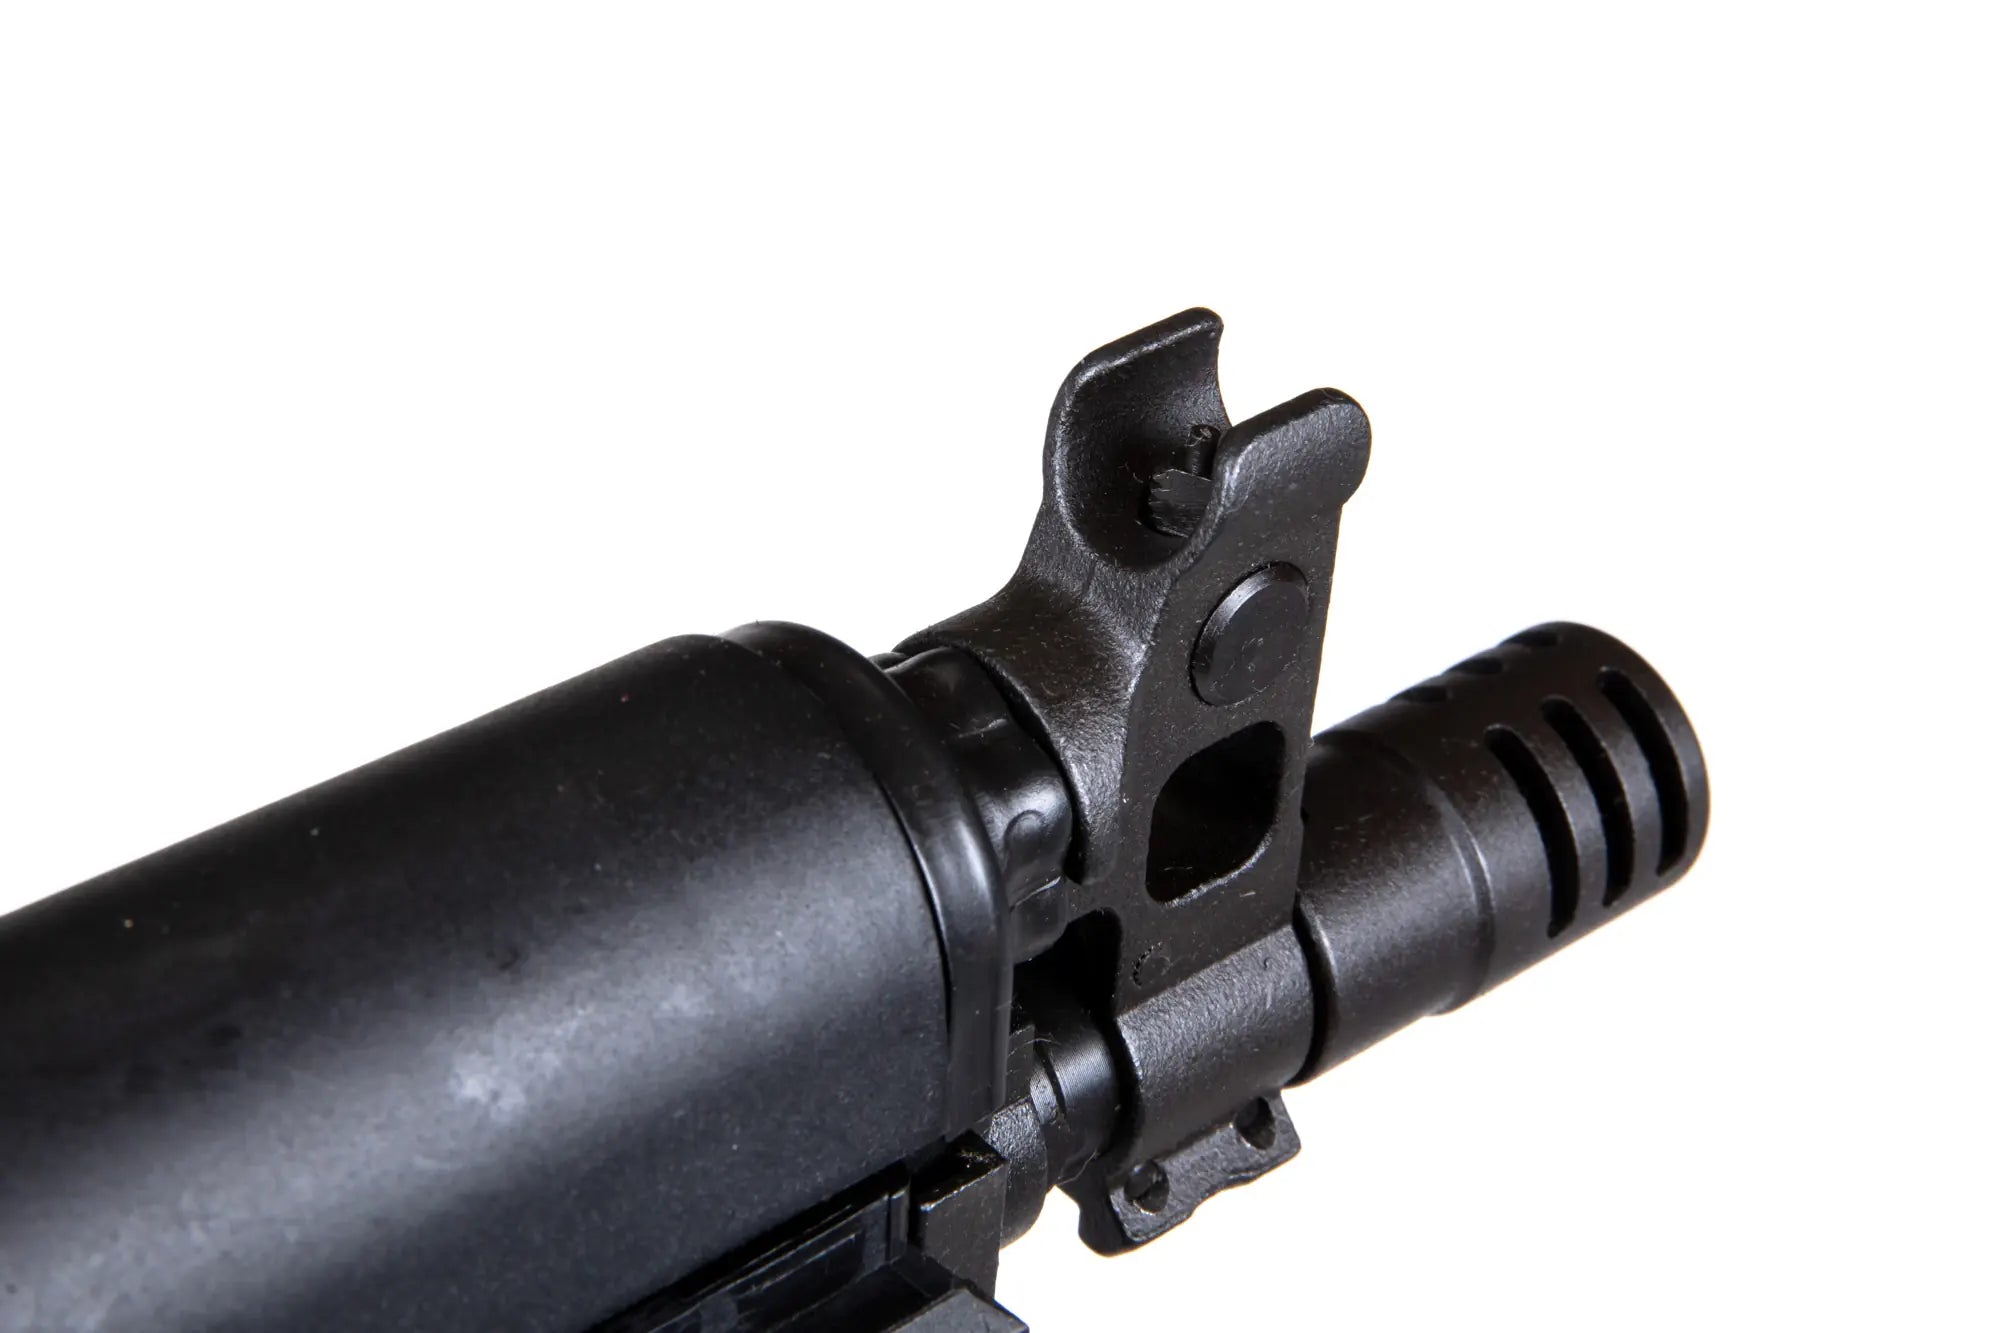 ASG LCT LPPK-20(2020) EBB submachine gun-1